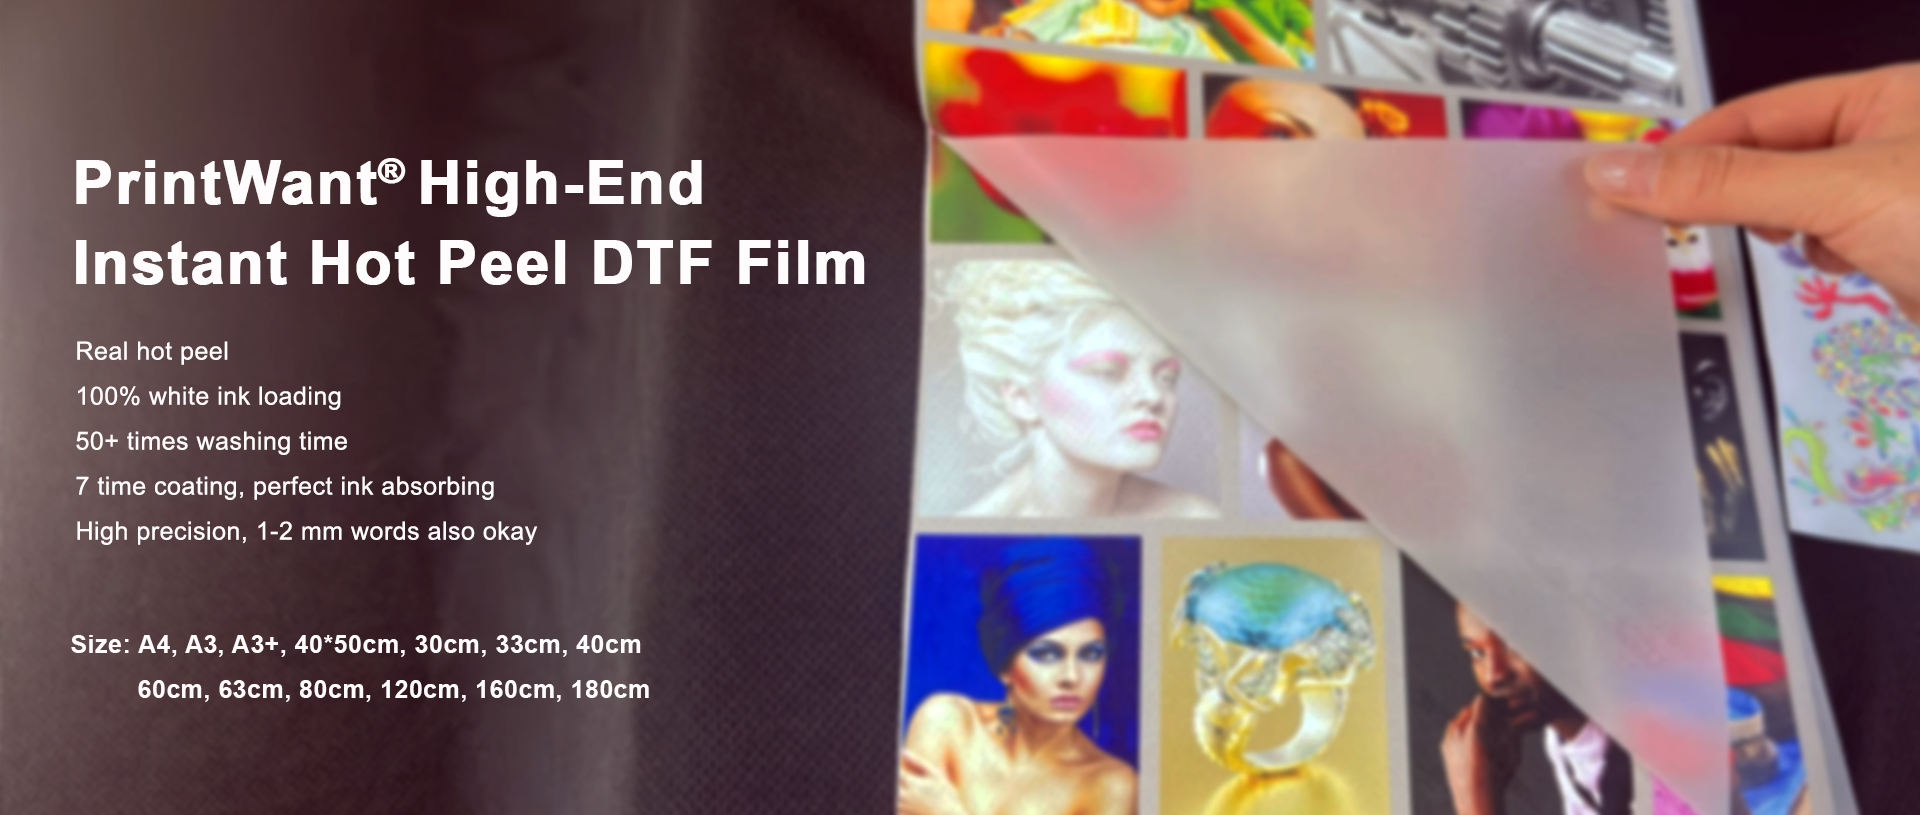 Film DTF Pet Film de PrintWant : le modèle industriel pour des effets Instant Hot Peel parfaits